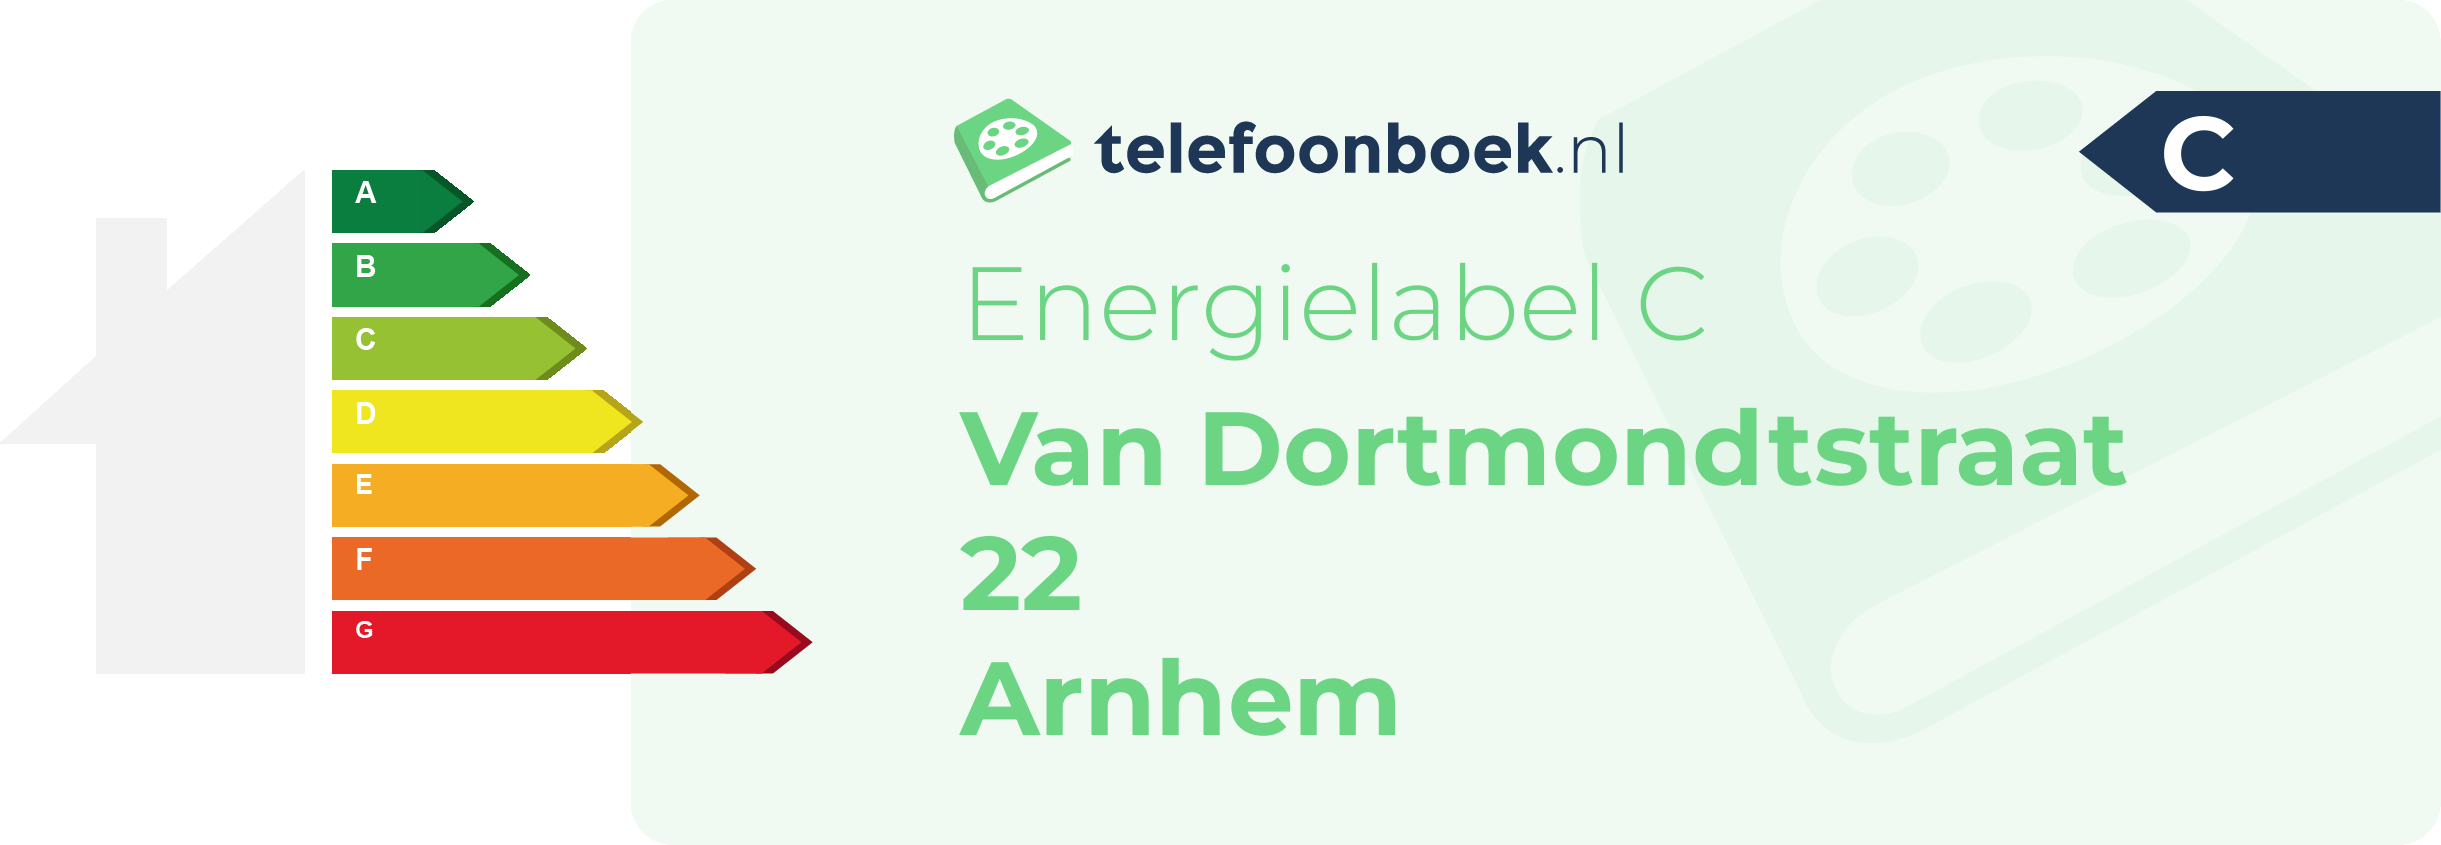 Energielabel Van Dortmondtstraat 22 Arnhem